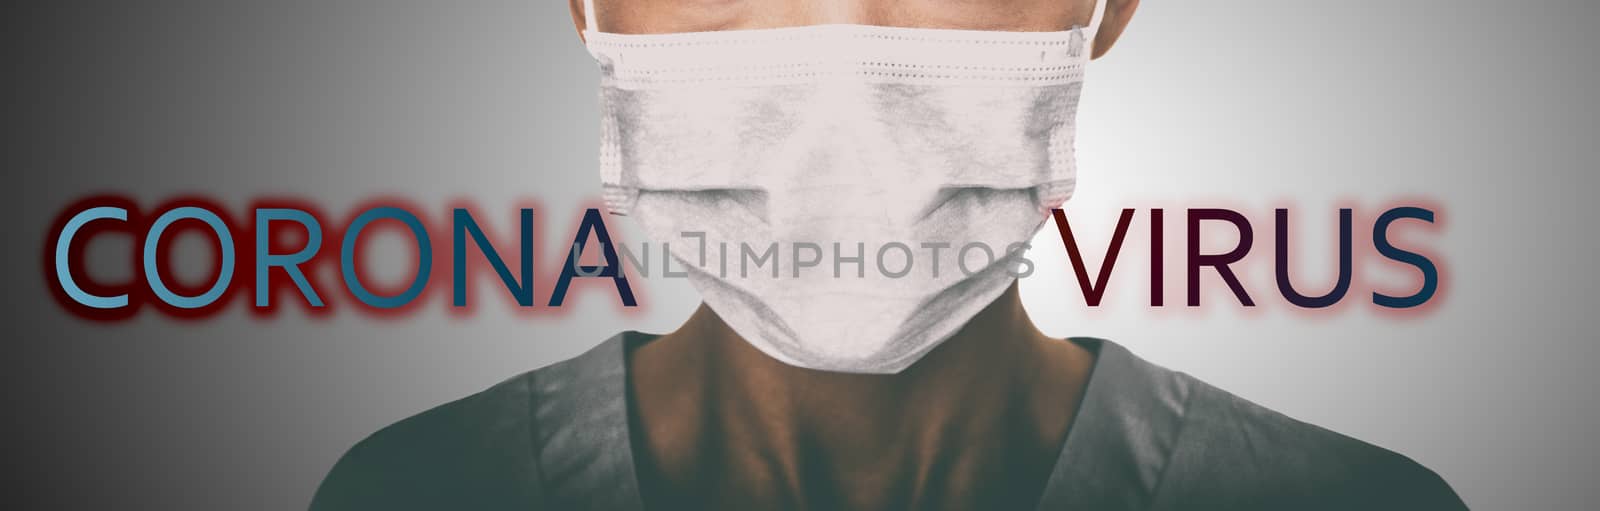 Corona virus coronavirus hospital mask header doctor wearing face masks prevention banner panoramic background by Maridav